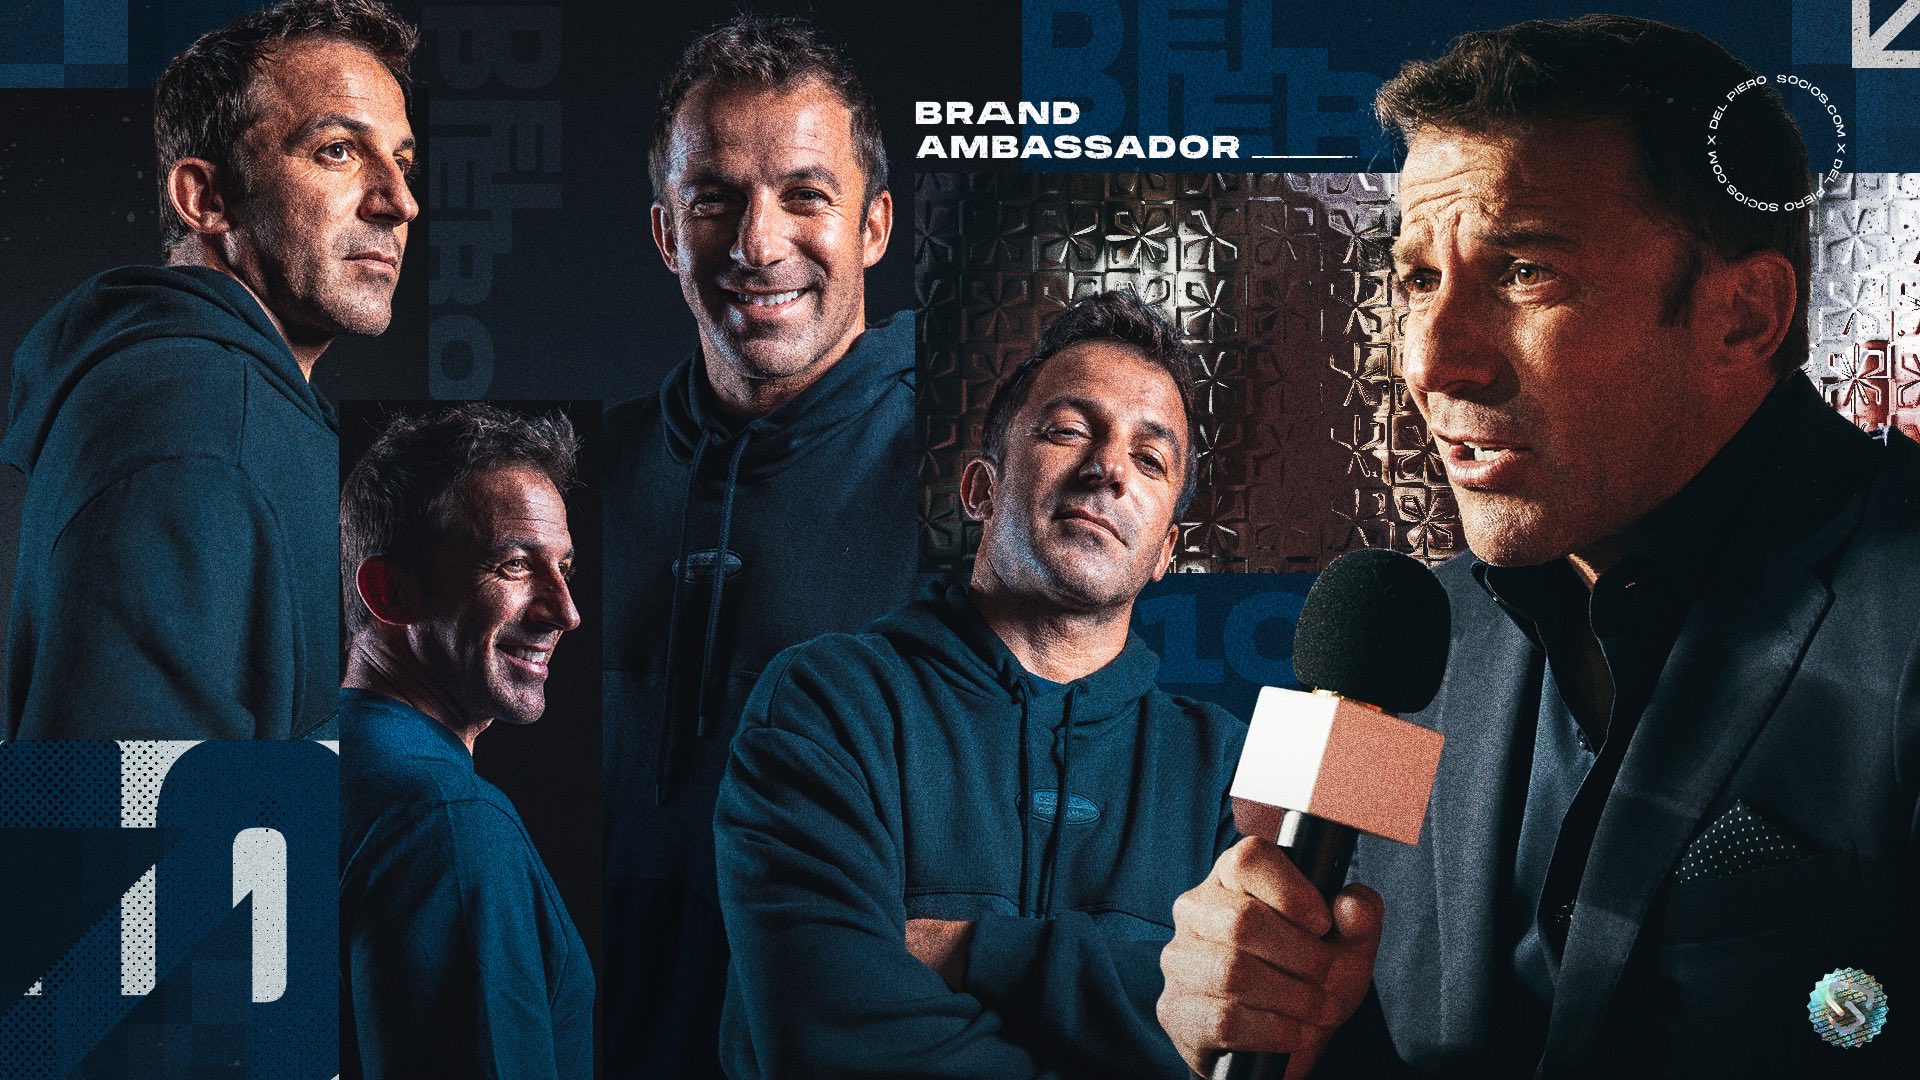 A agência Willie Beamen acompanha o Socios.com em sua nova campanha publicitária, incluindo Del Piero e Messi